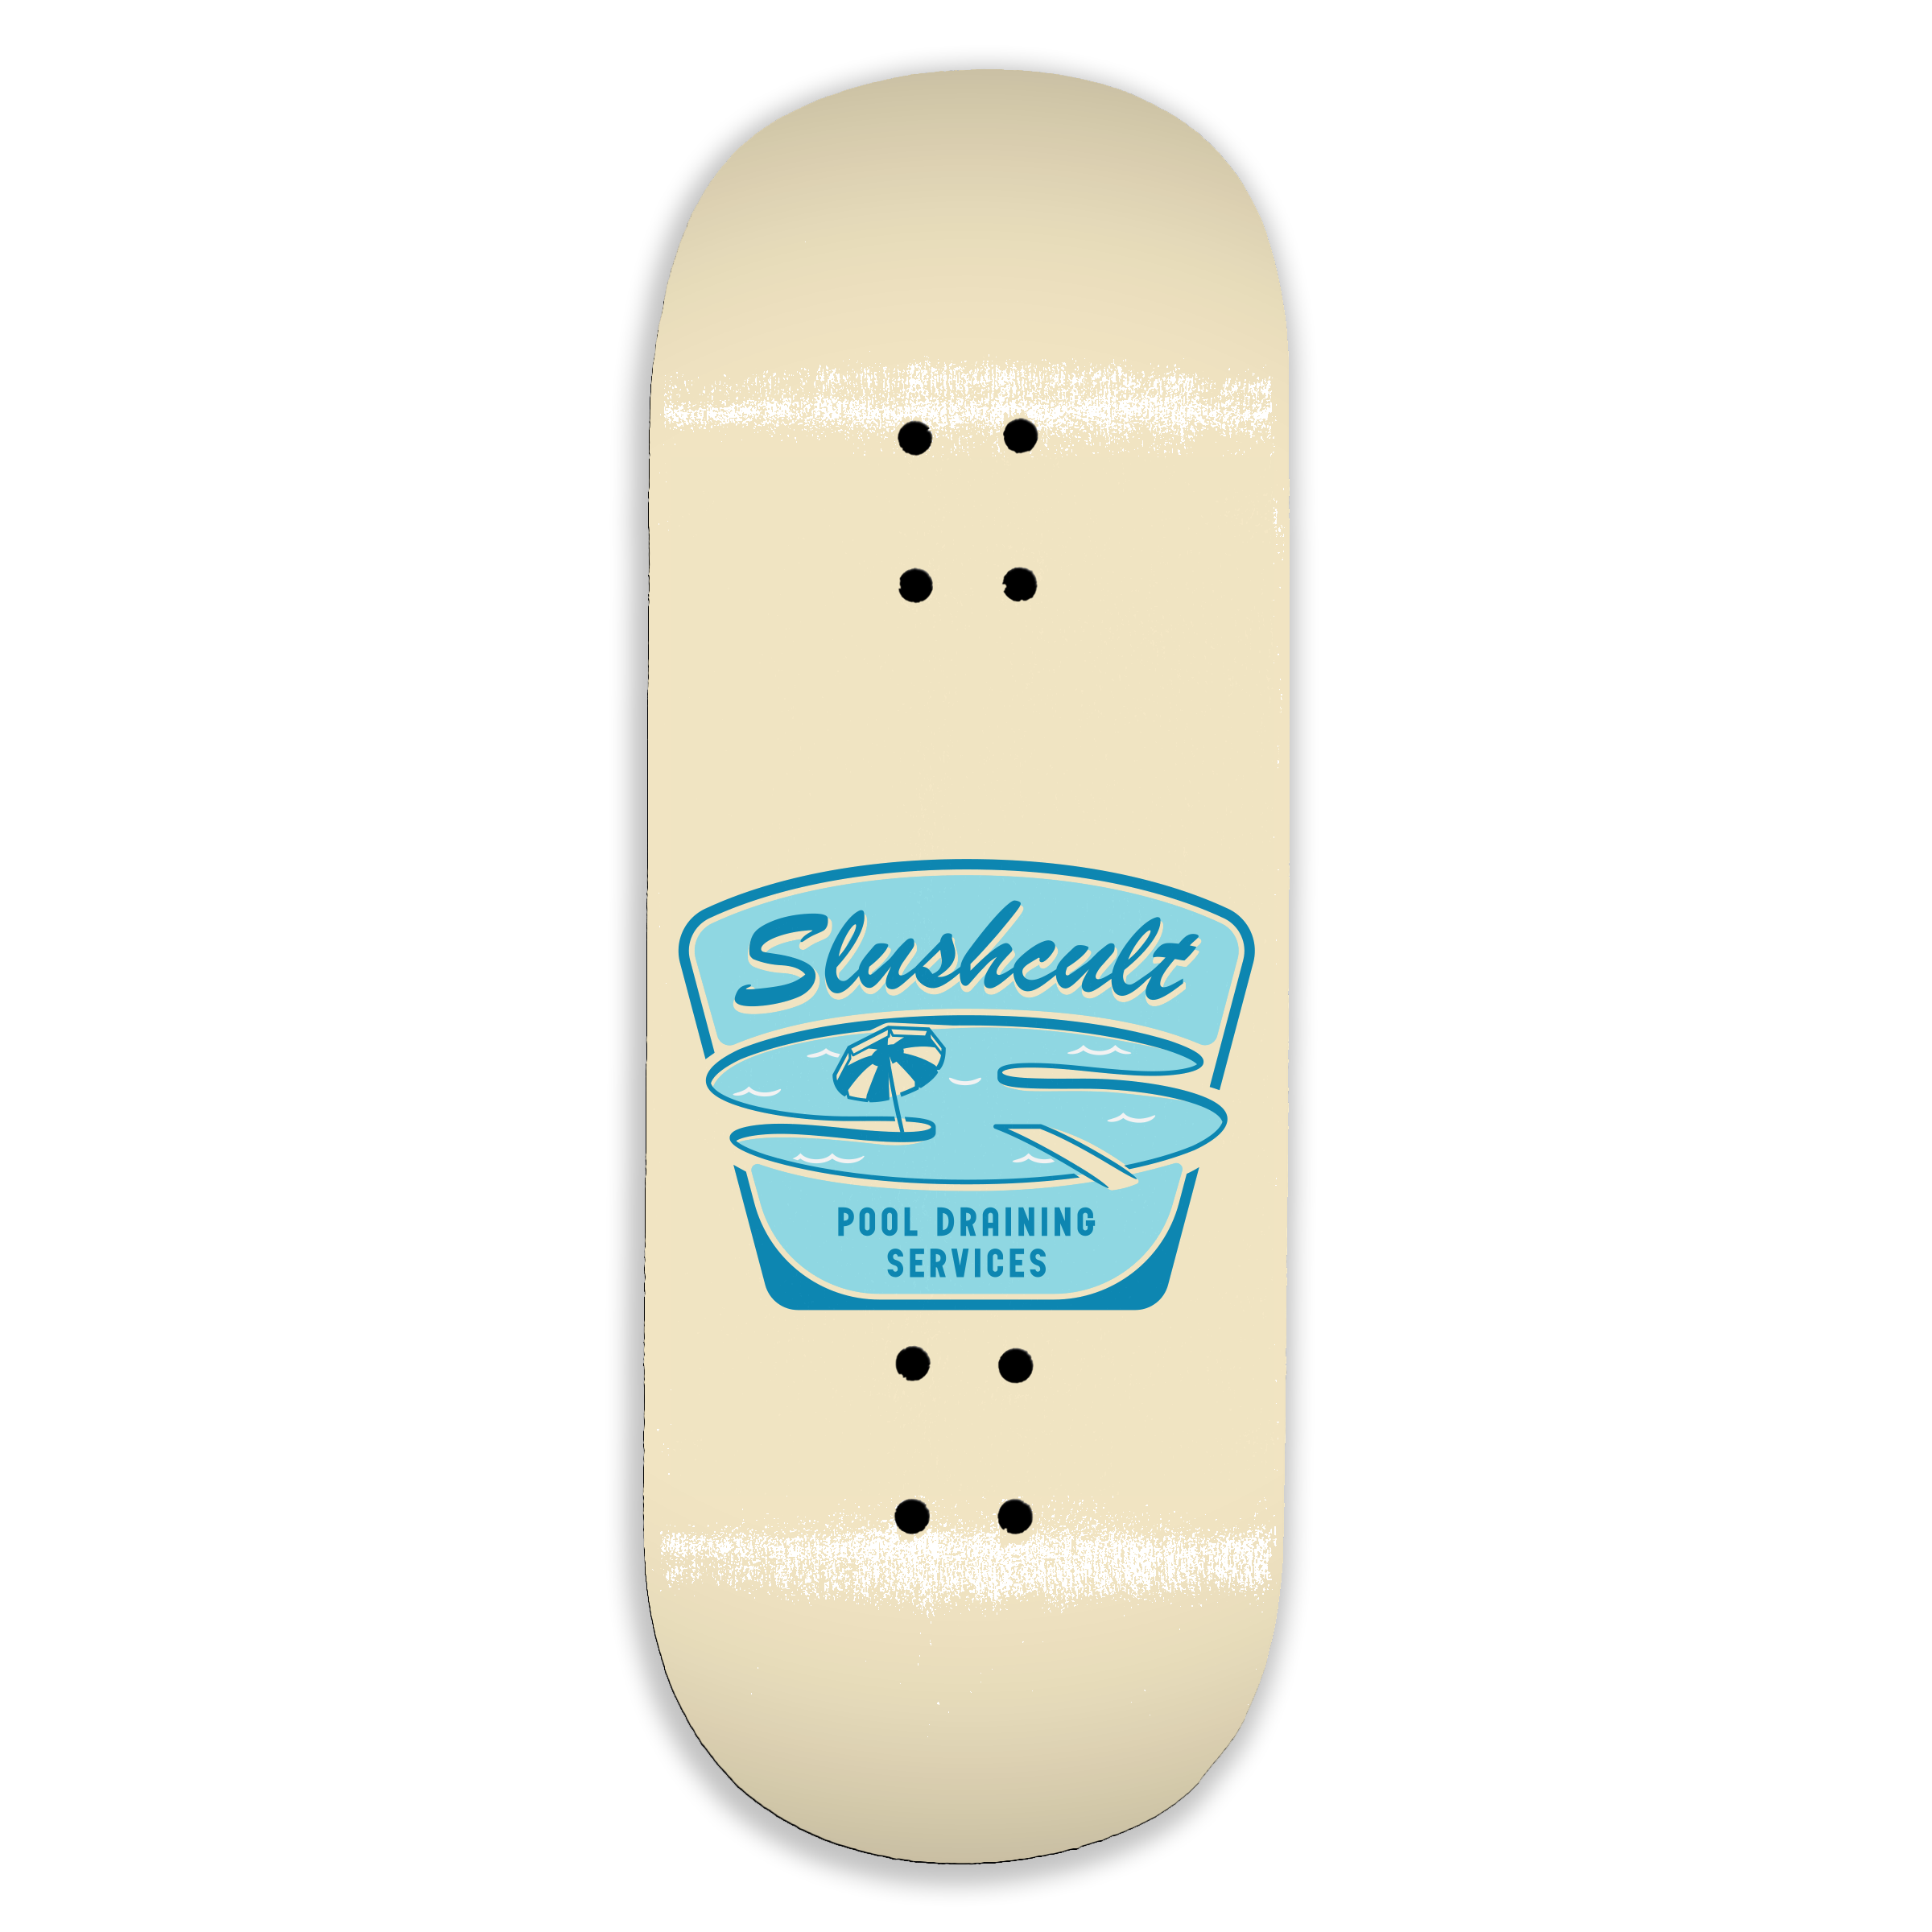 Slushcult "Pool Services" Shop Fingerboard Deck MINI Skate Shop Slushcult    Slushcult